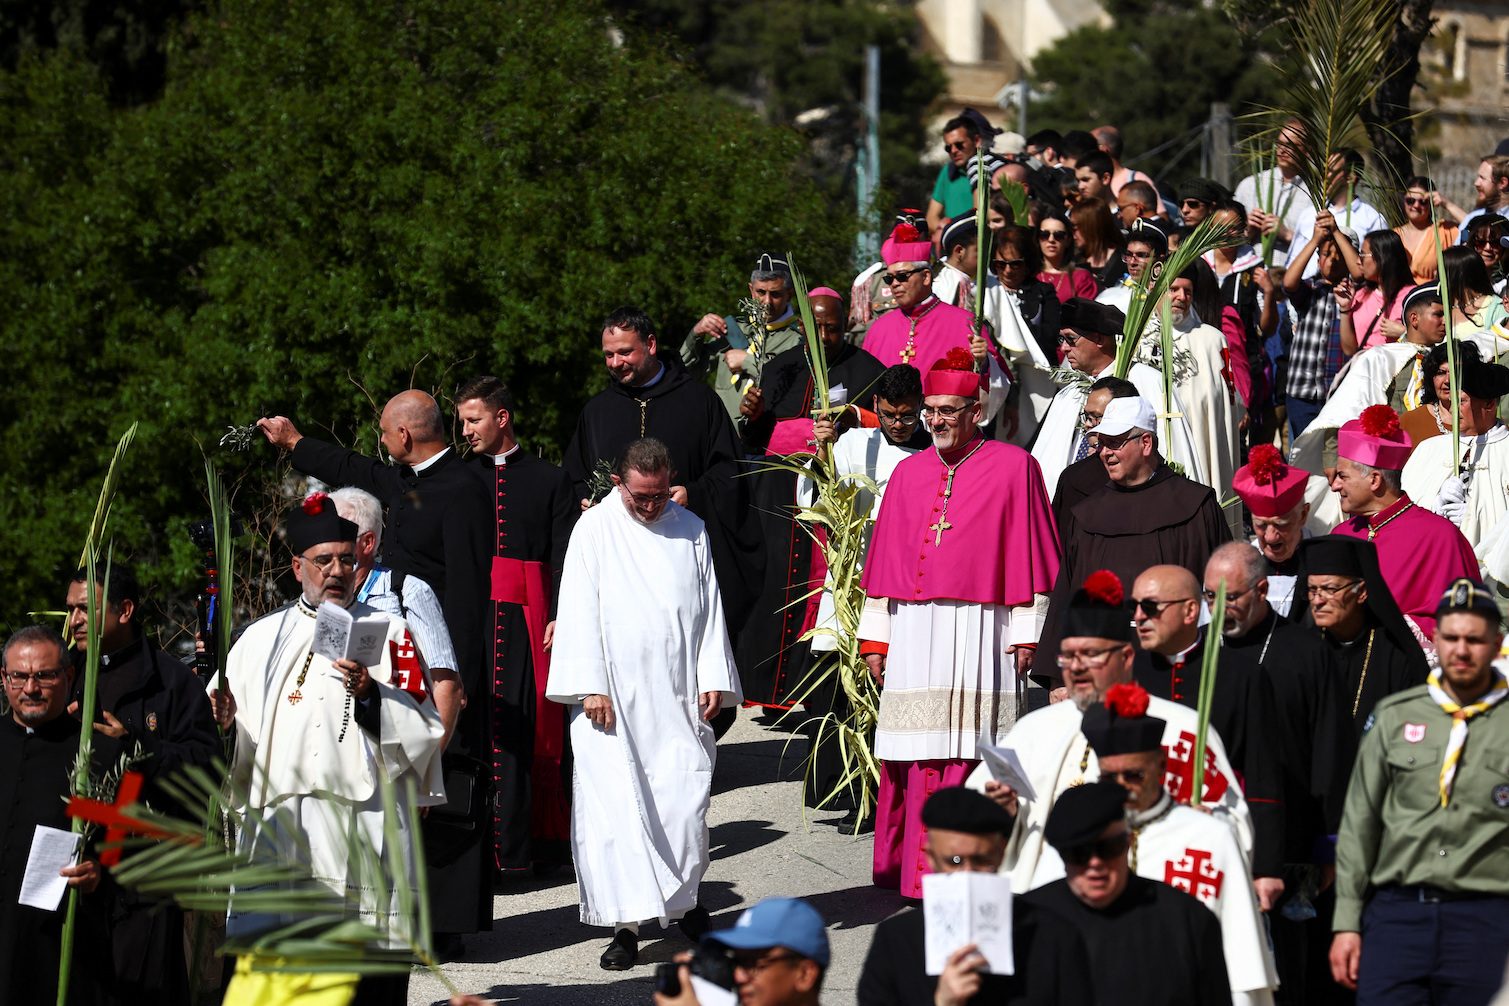 Christians celebrate Palm Sunday in Jerusalem, striving to maintain presence